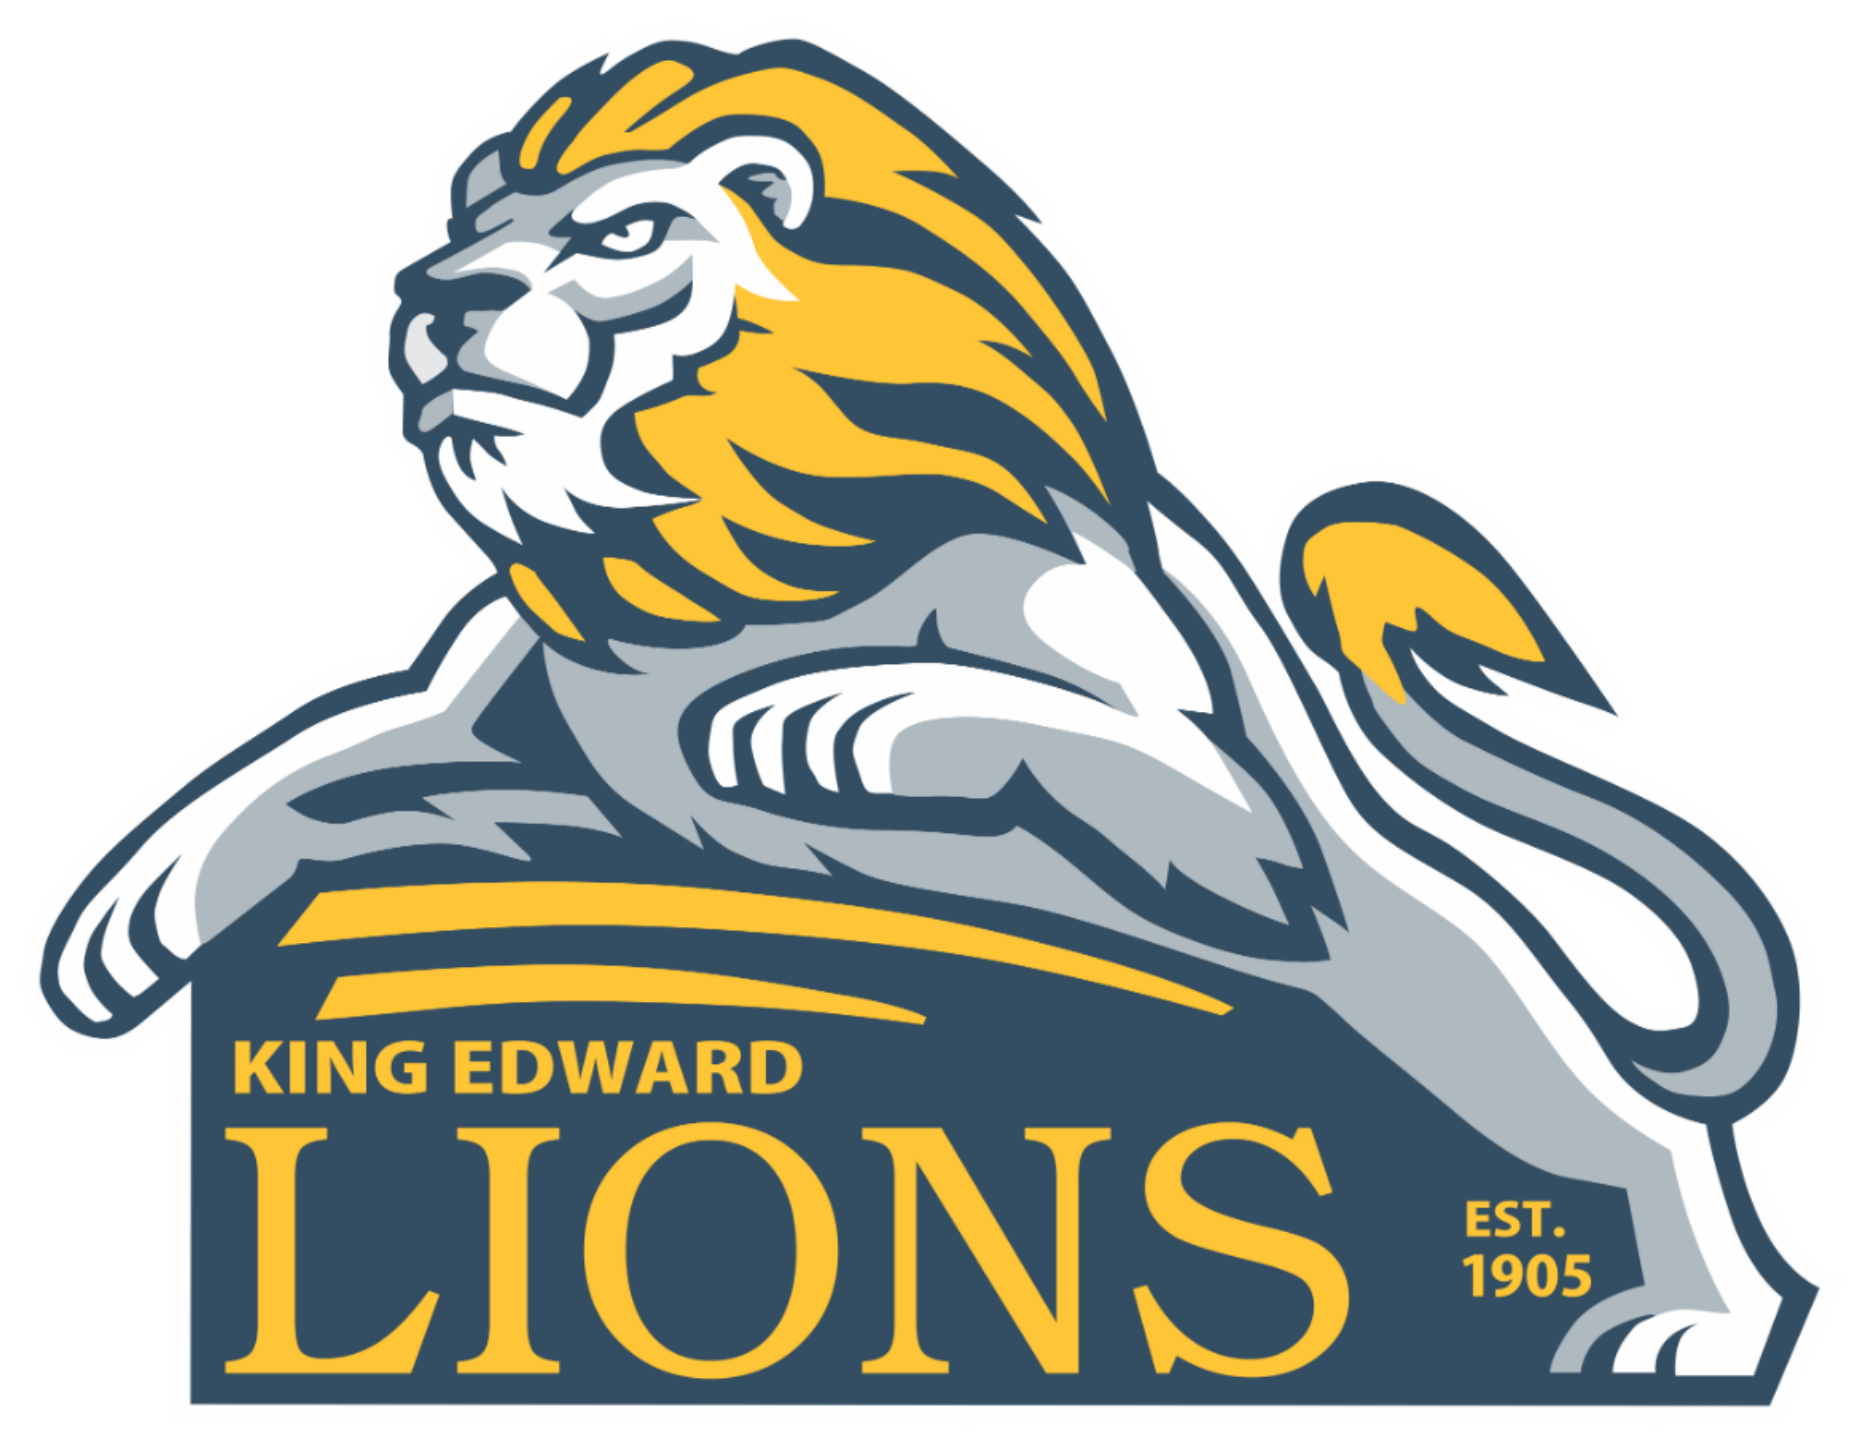 King Edward Public School Logo